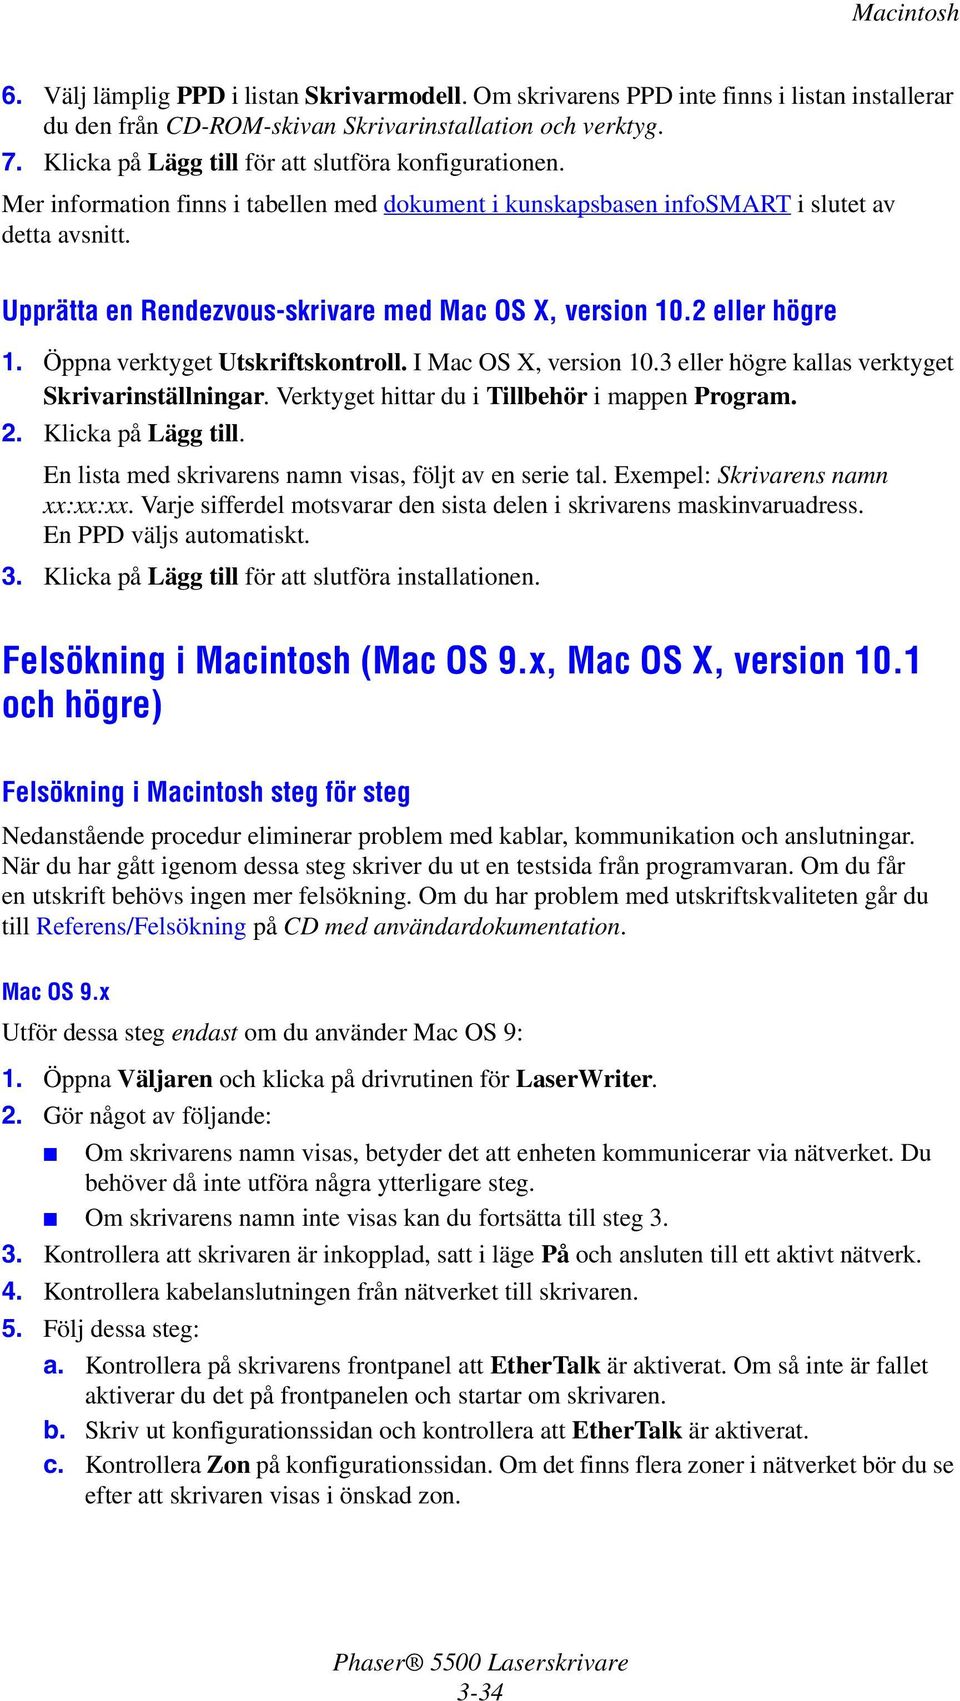 Upprätta en Rendezvous-skrivare med Mac OS X, version 10.2 eller högre 1. Öppna verktyget Utskriftskontroll. I Mac OS X, version 10.3 eller högre kallas verktyget Skrivarinställningar.